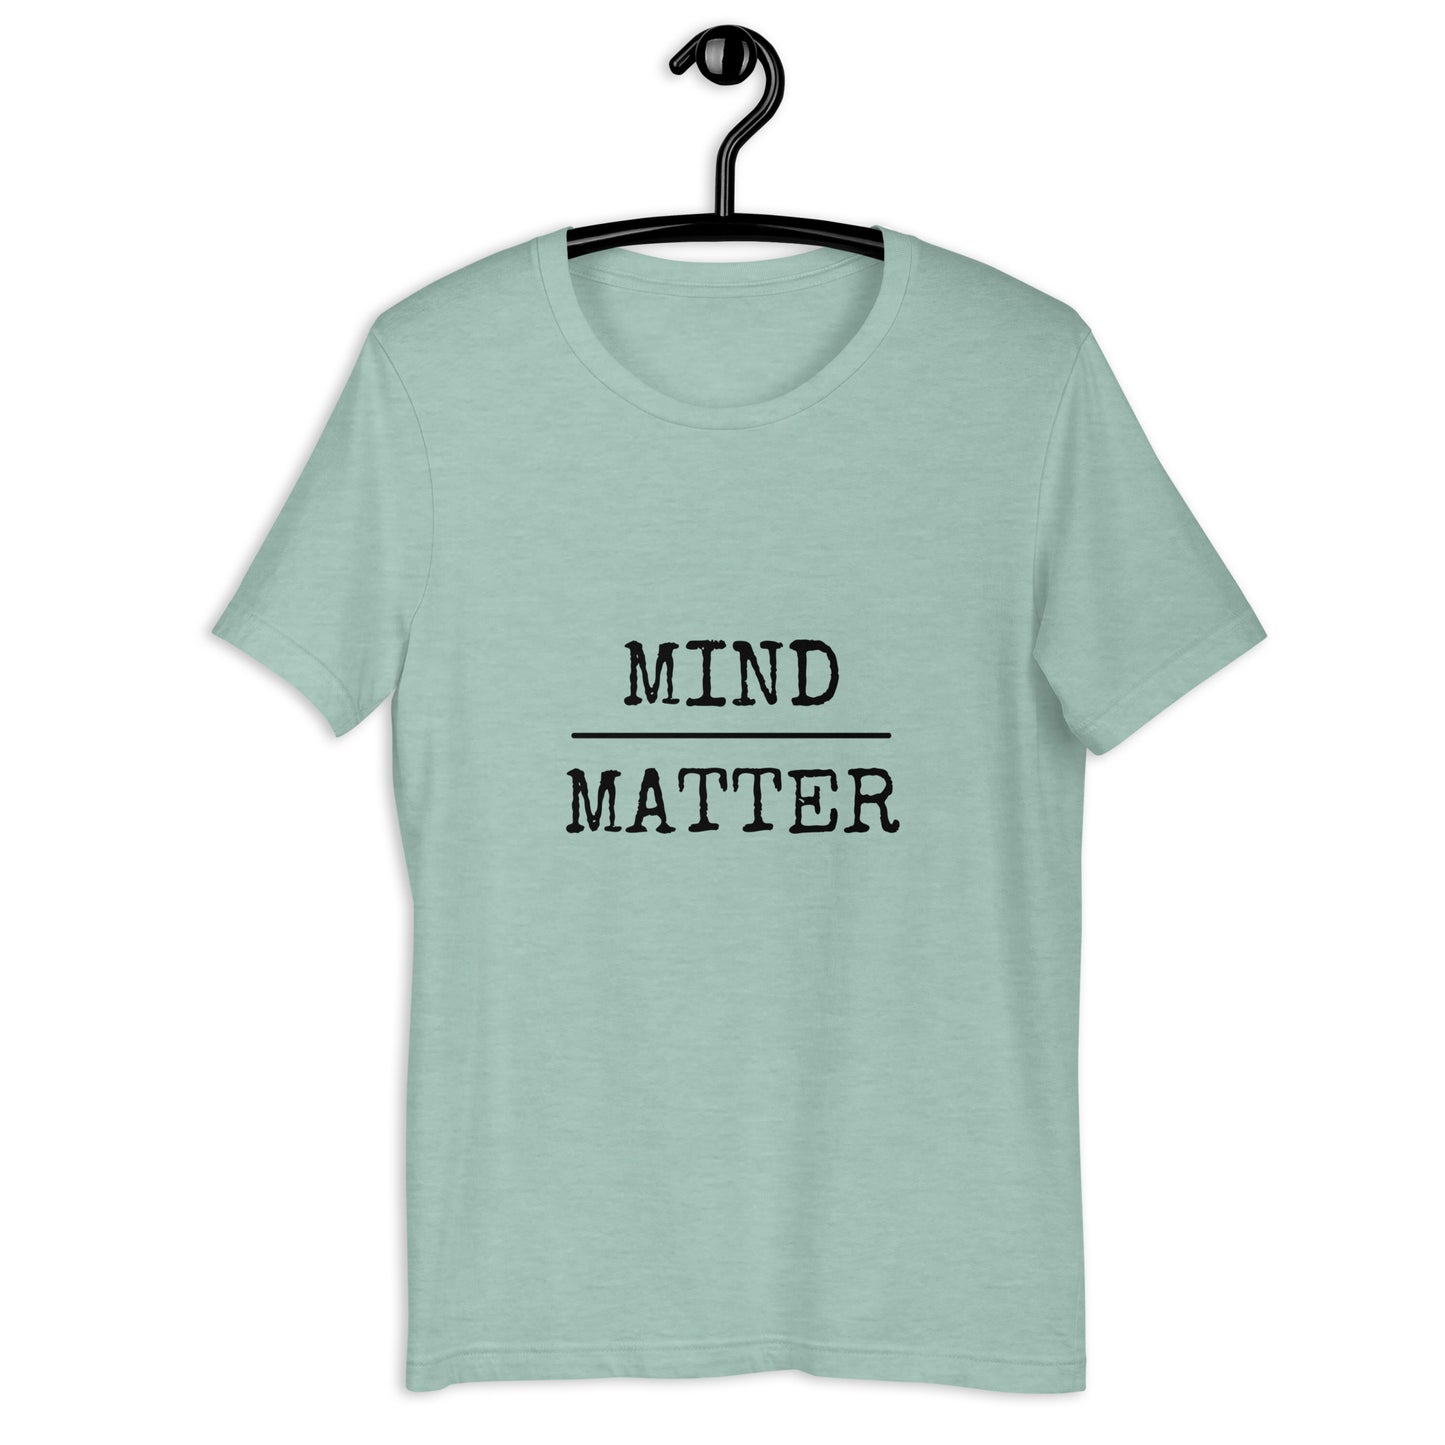 MIND/MATTER T-shirt